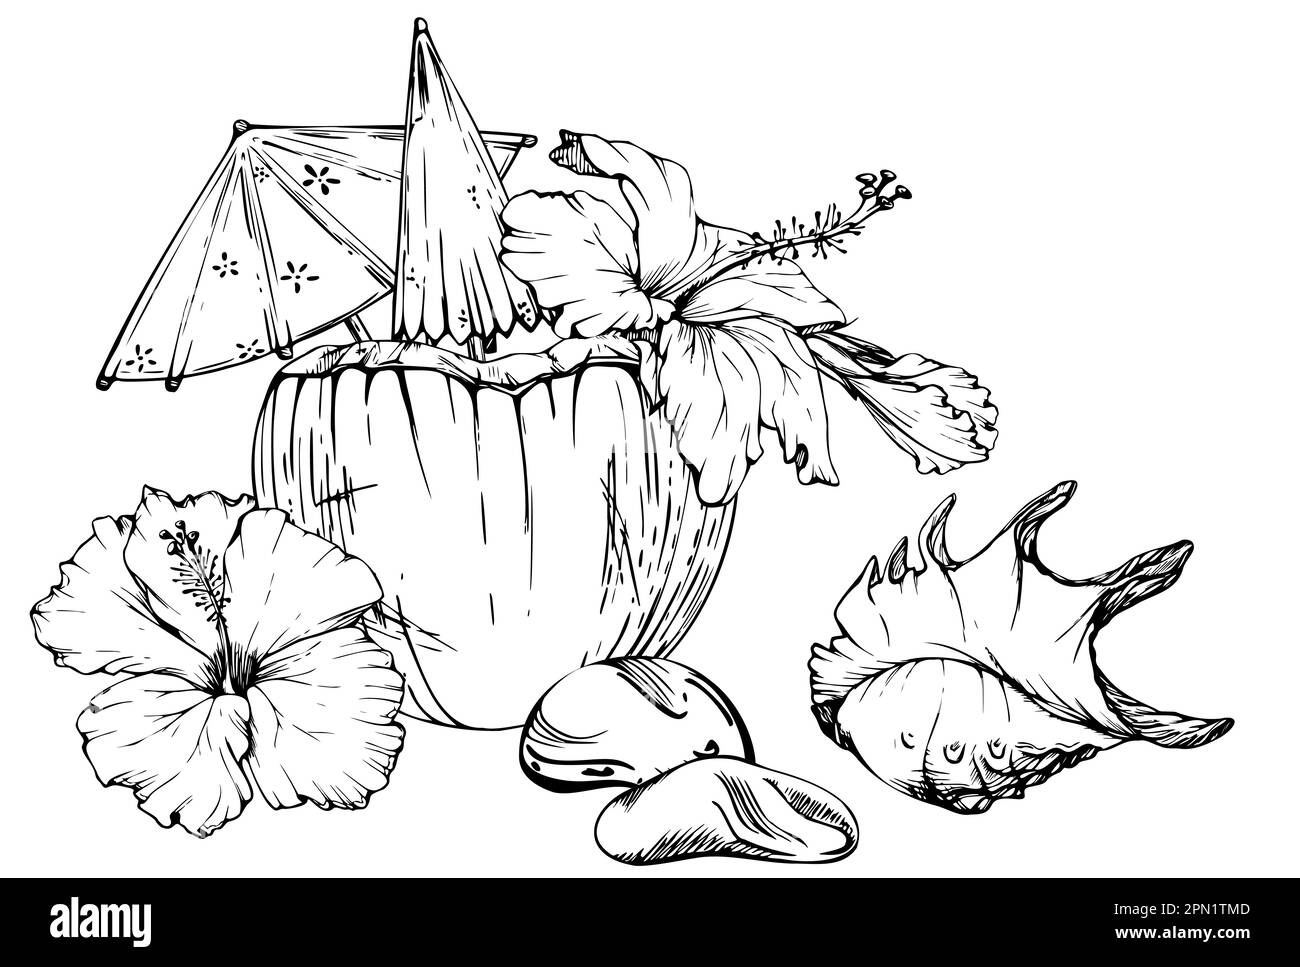 Composition d'encre vectorielle dessinée à la main. Cocktail de noix de coco avec parasols en papier, fleurs d'hibiscus. Isolé sur fond blanc. Décoration murale, mariage Illustration de Vecteur